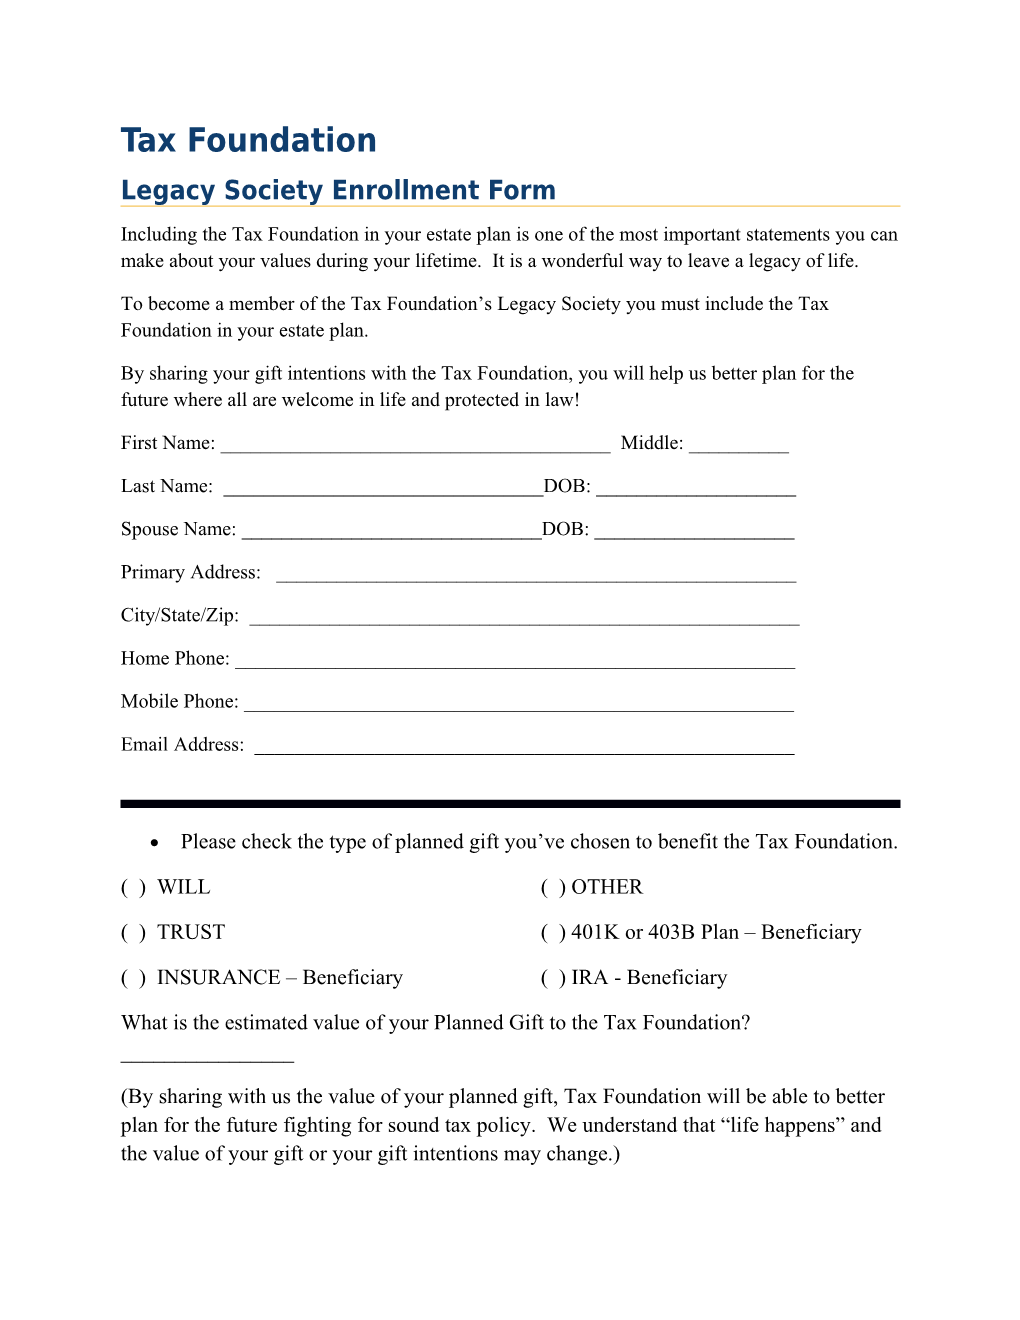 Legacy Society Enrollment Form